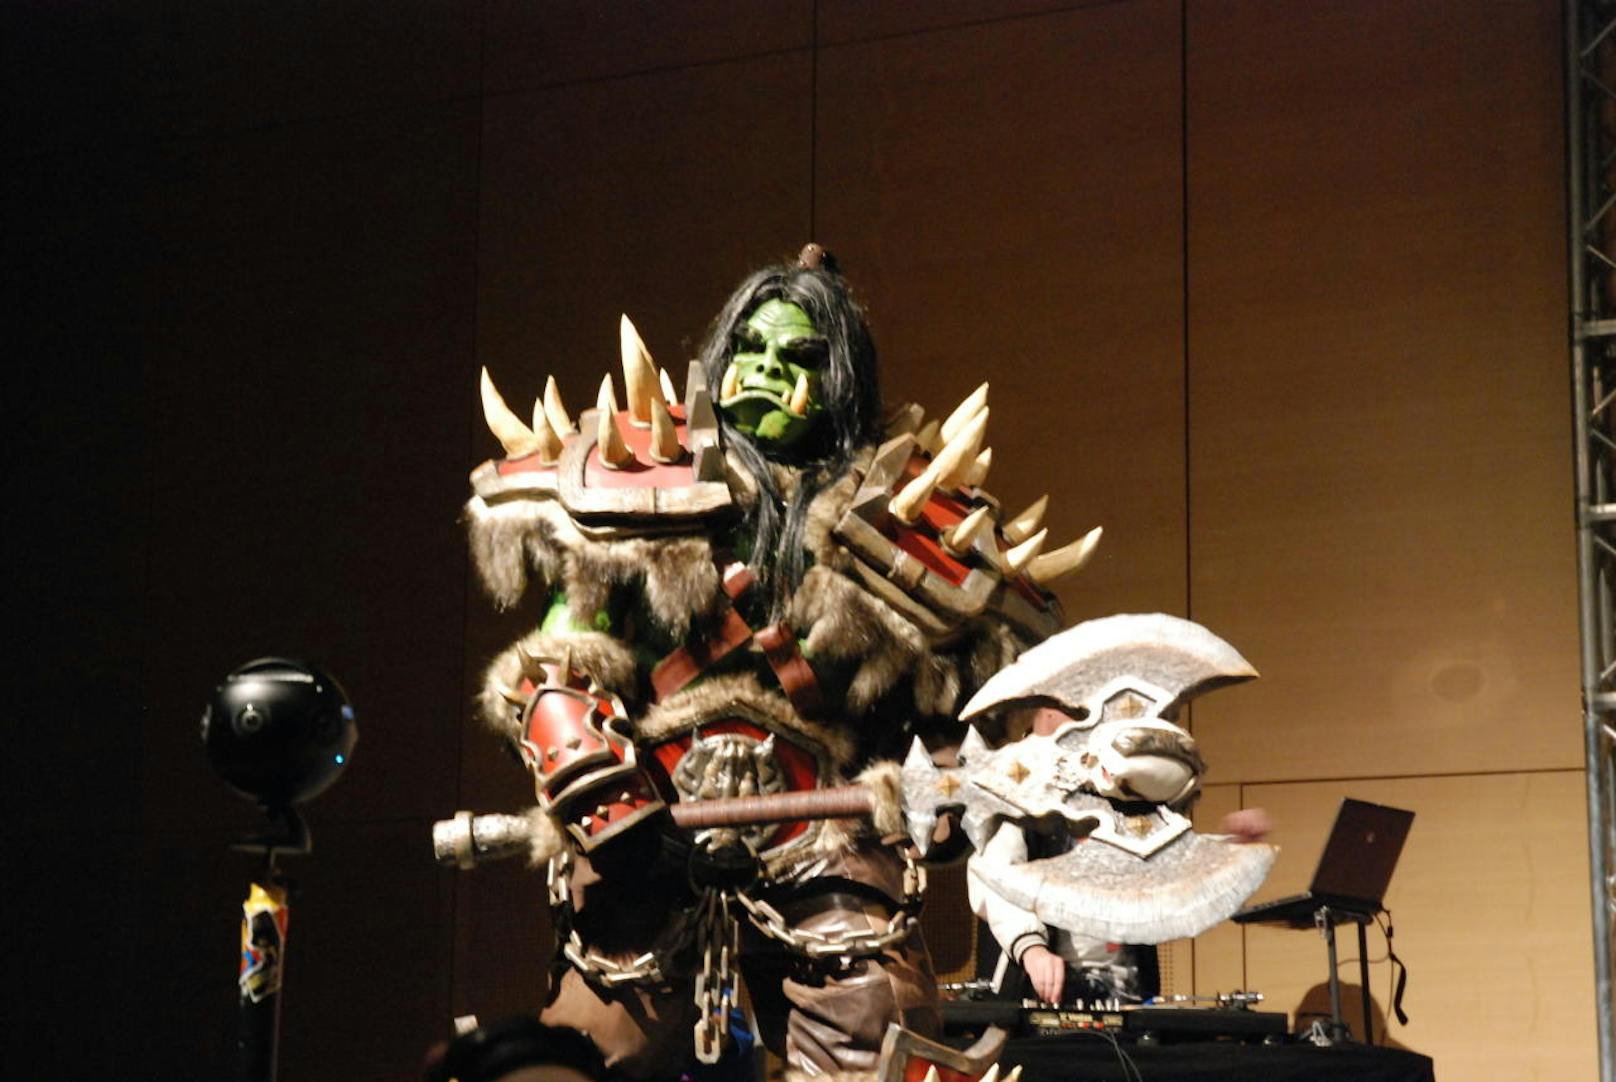 Bei Garage Inc war jedes Detail, von den Zähnen bis zur Axt, beeindruckend. 

Ein Ork (männlich) aus Warcraft
Cosplayer: Garage Inc
Kategorie FX